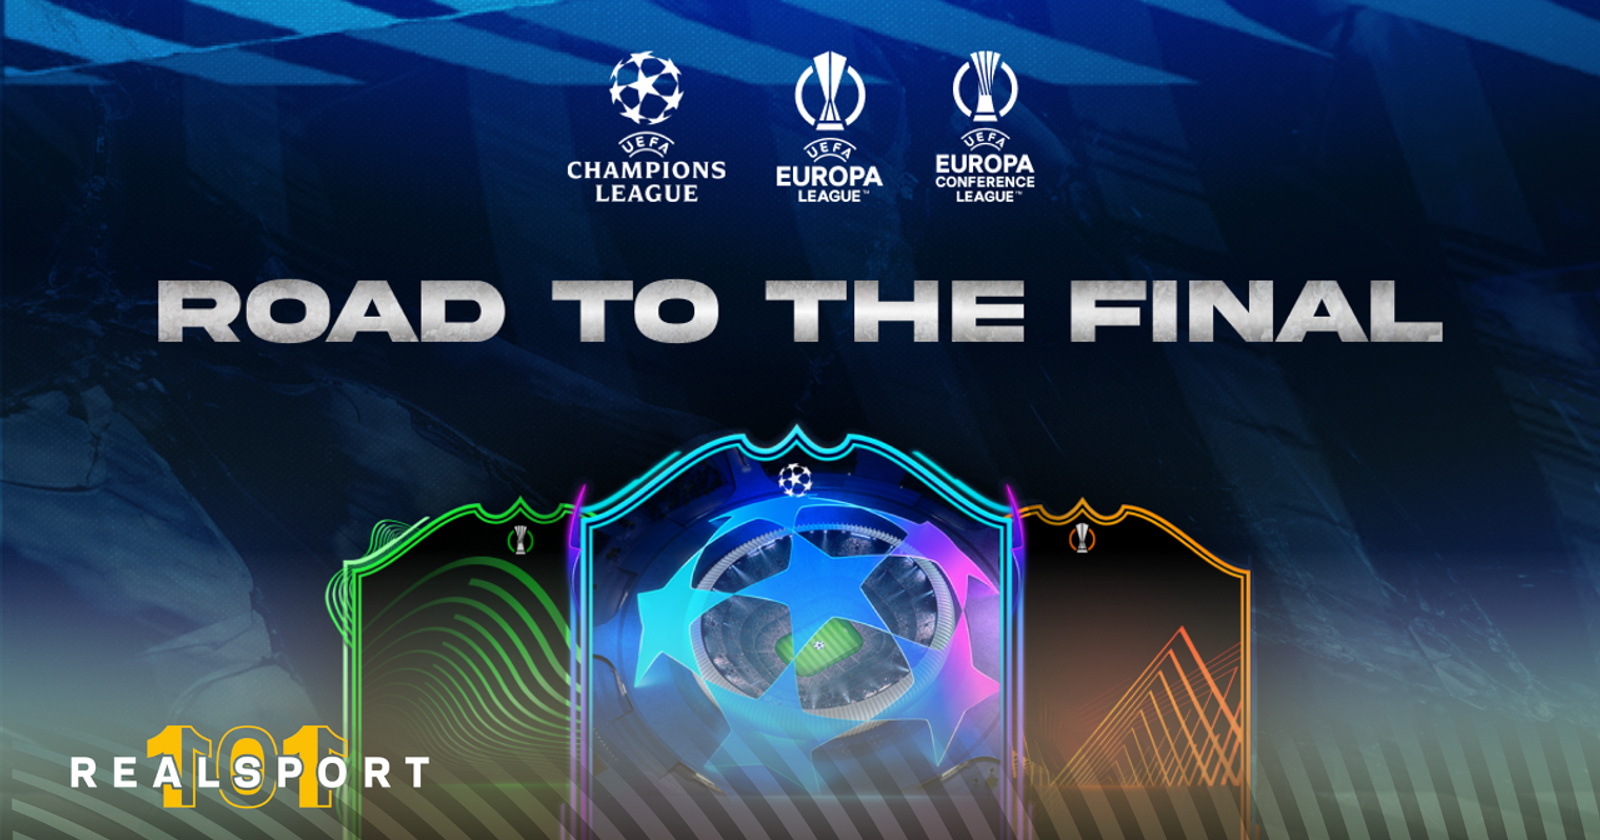 Champions e Europa League a caminho de FIFA 19